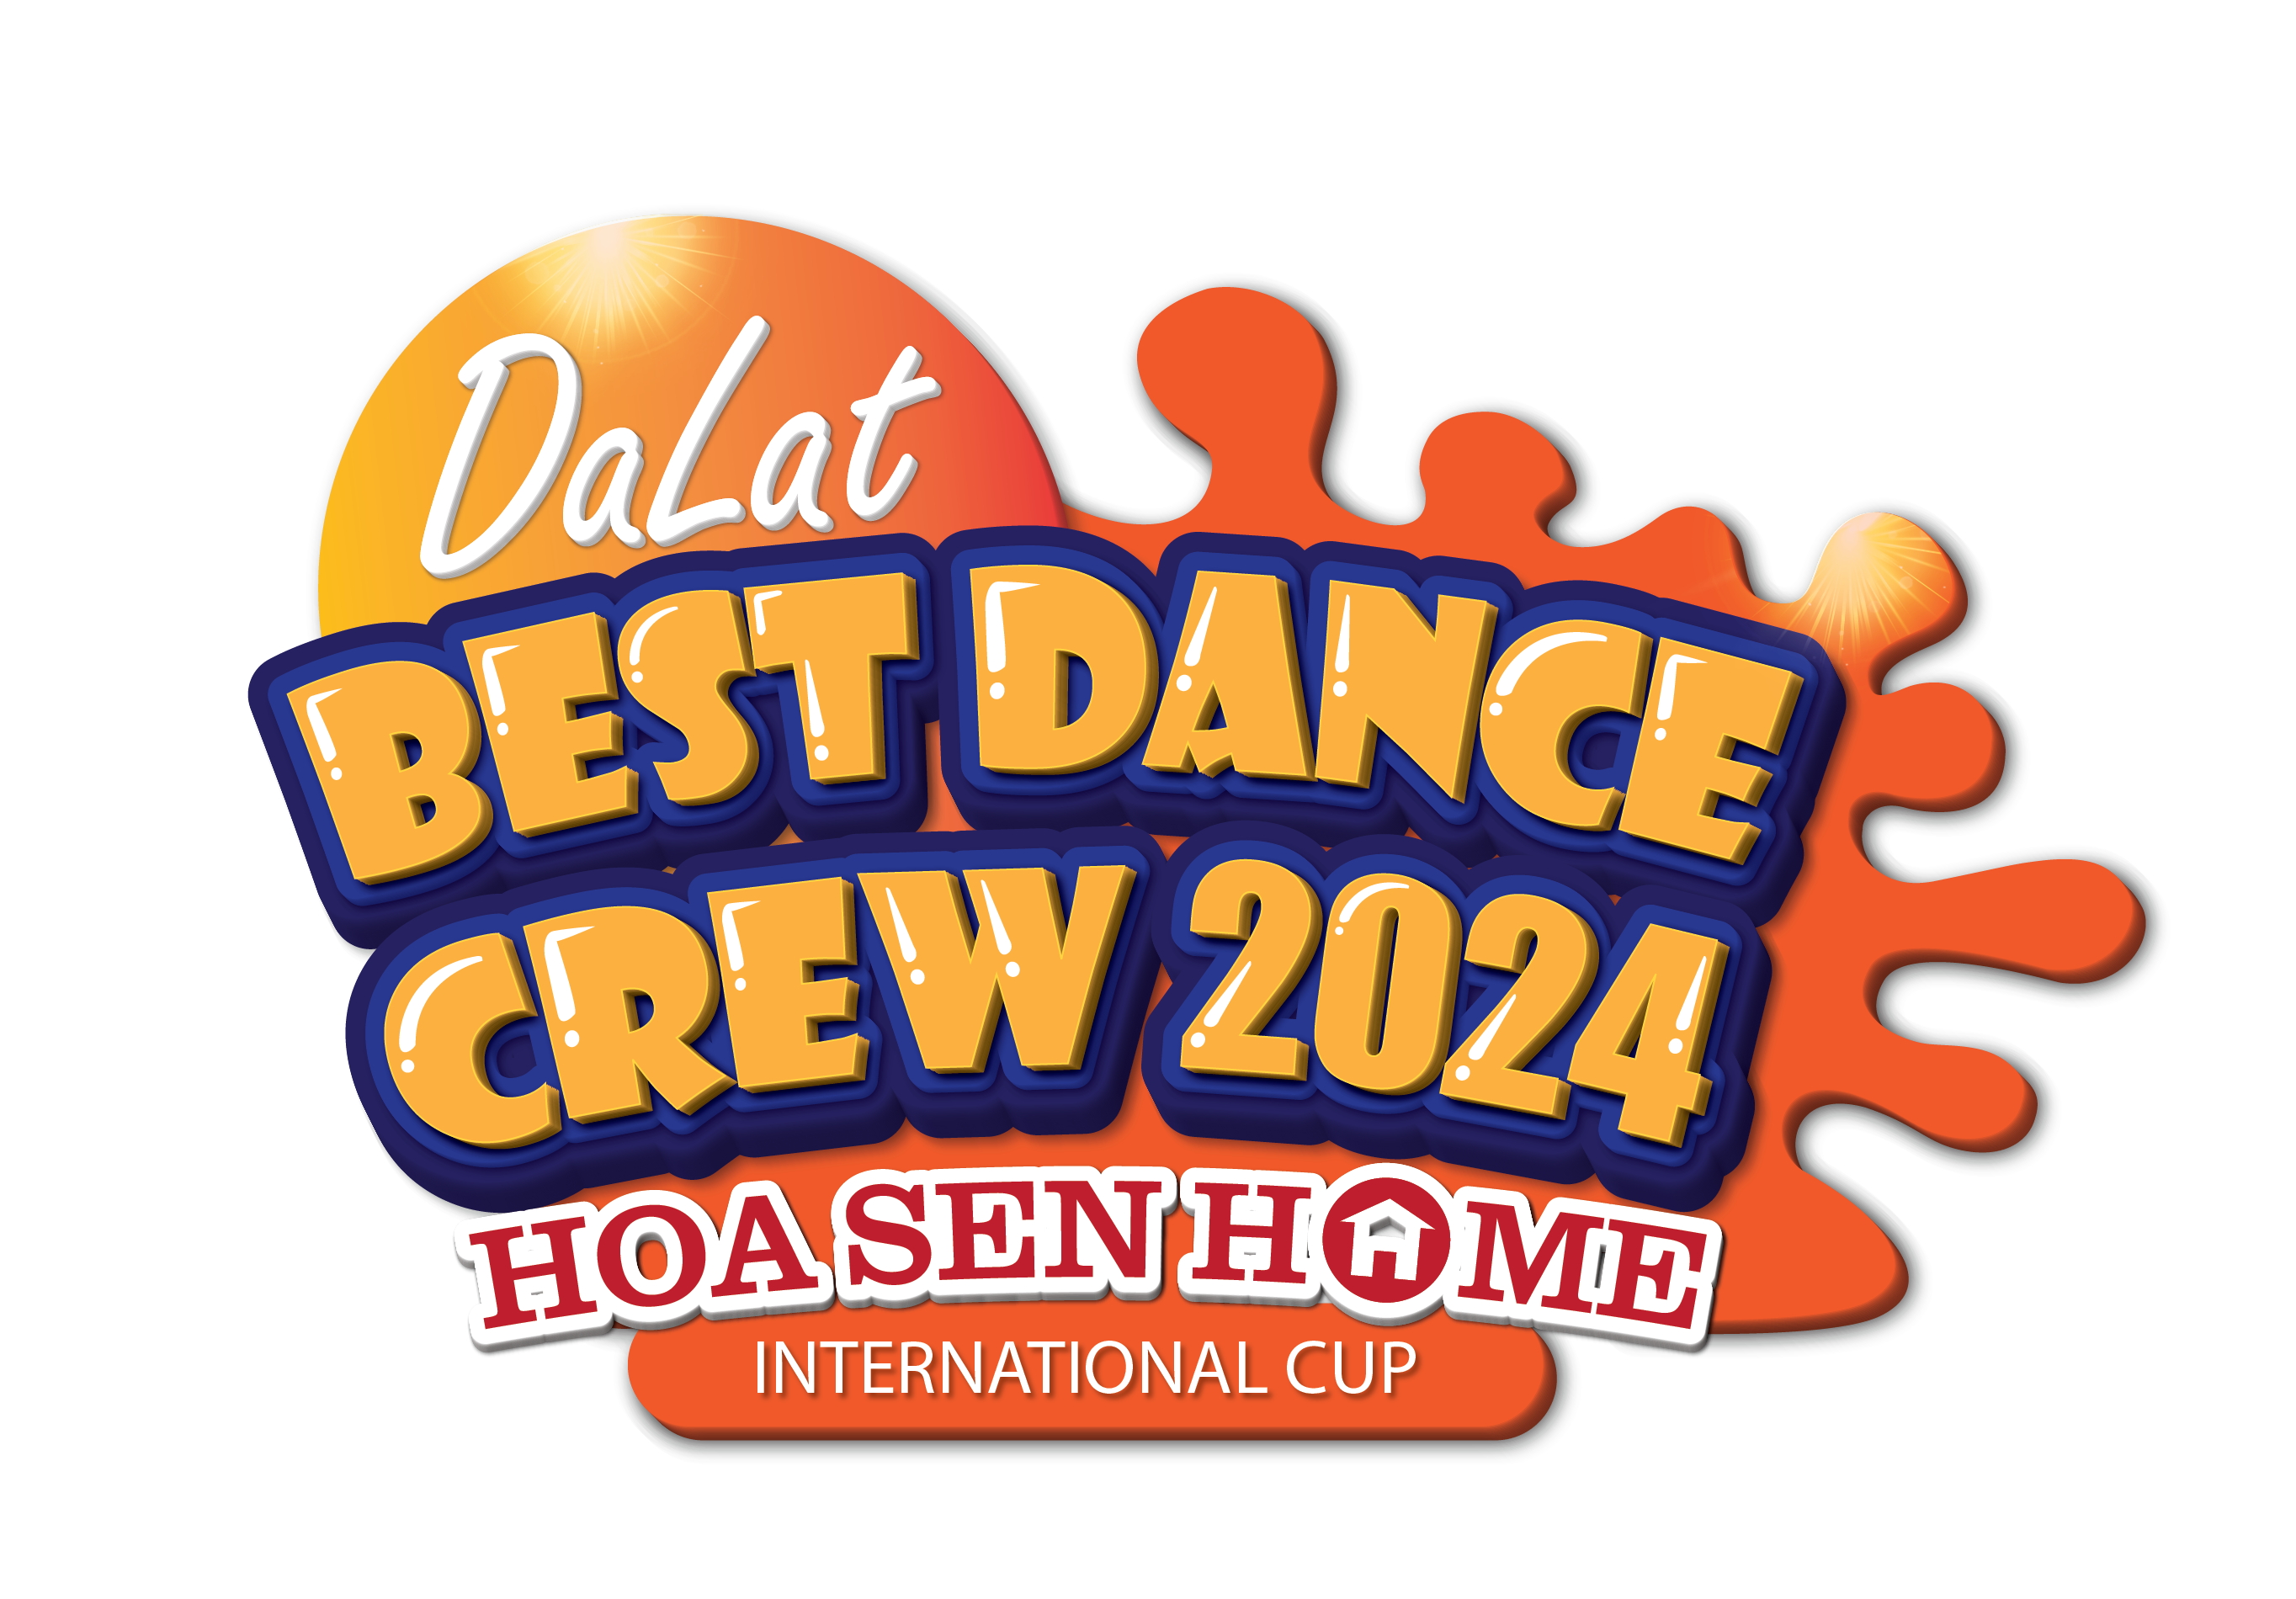 Dalat Best Dance Crew 2024 - Hoa Sen Home International Cup